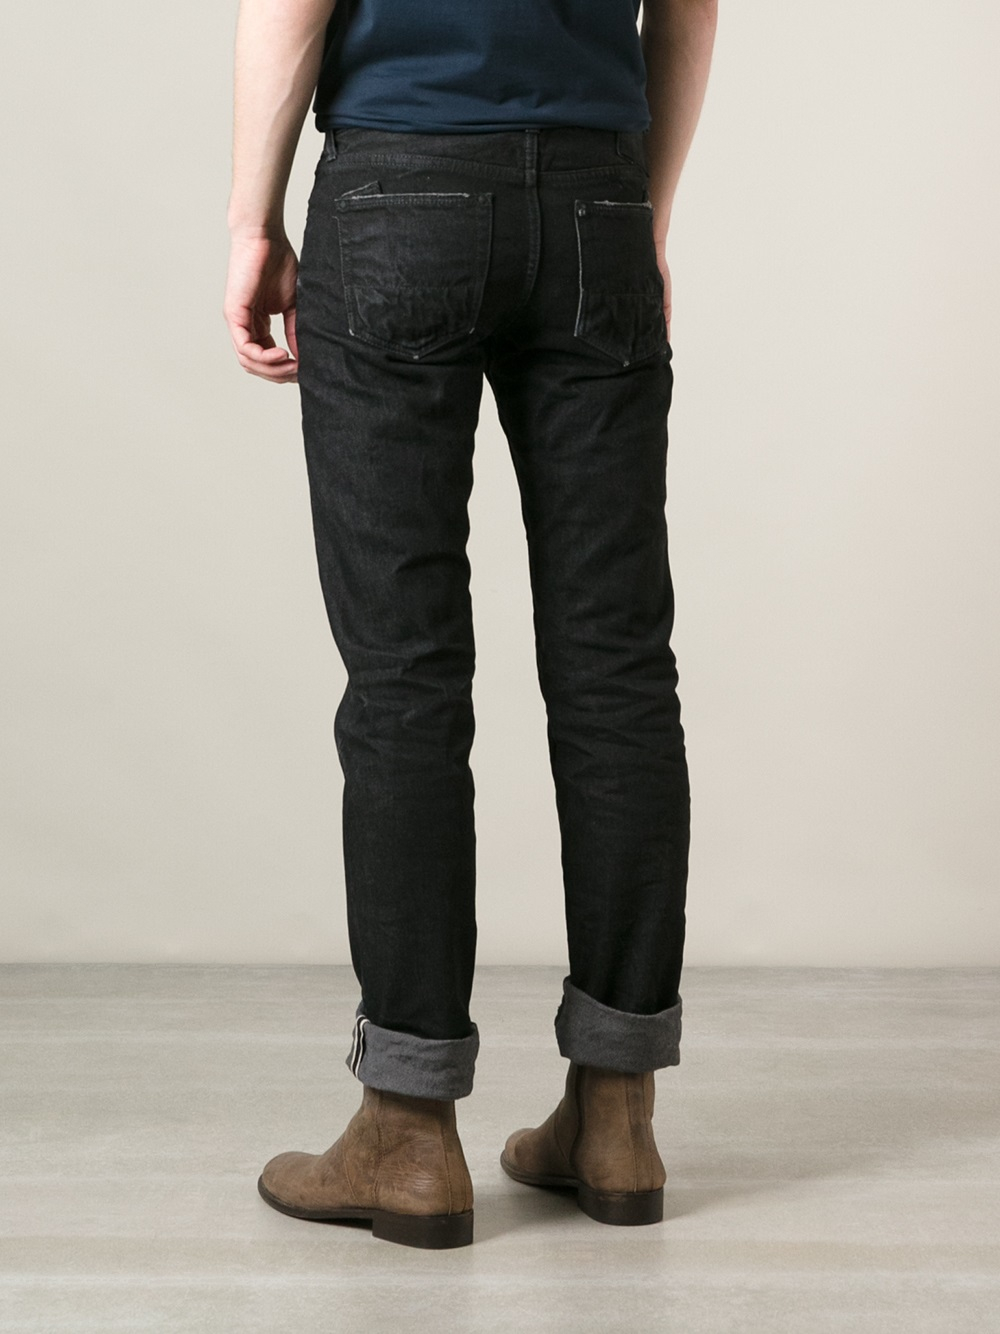 Lyst - Prps Noir Straight Leg Jeans in Black for Men